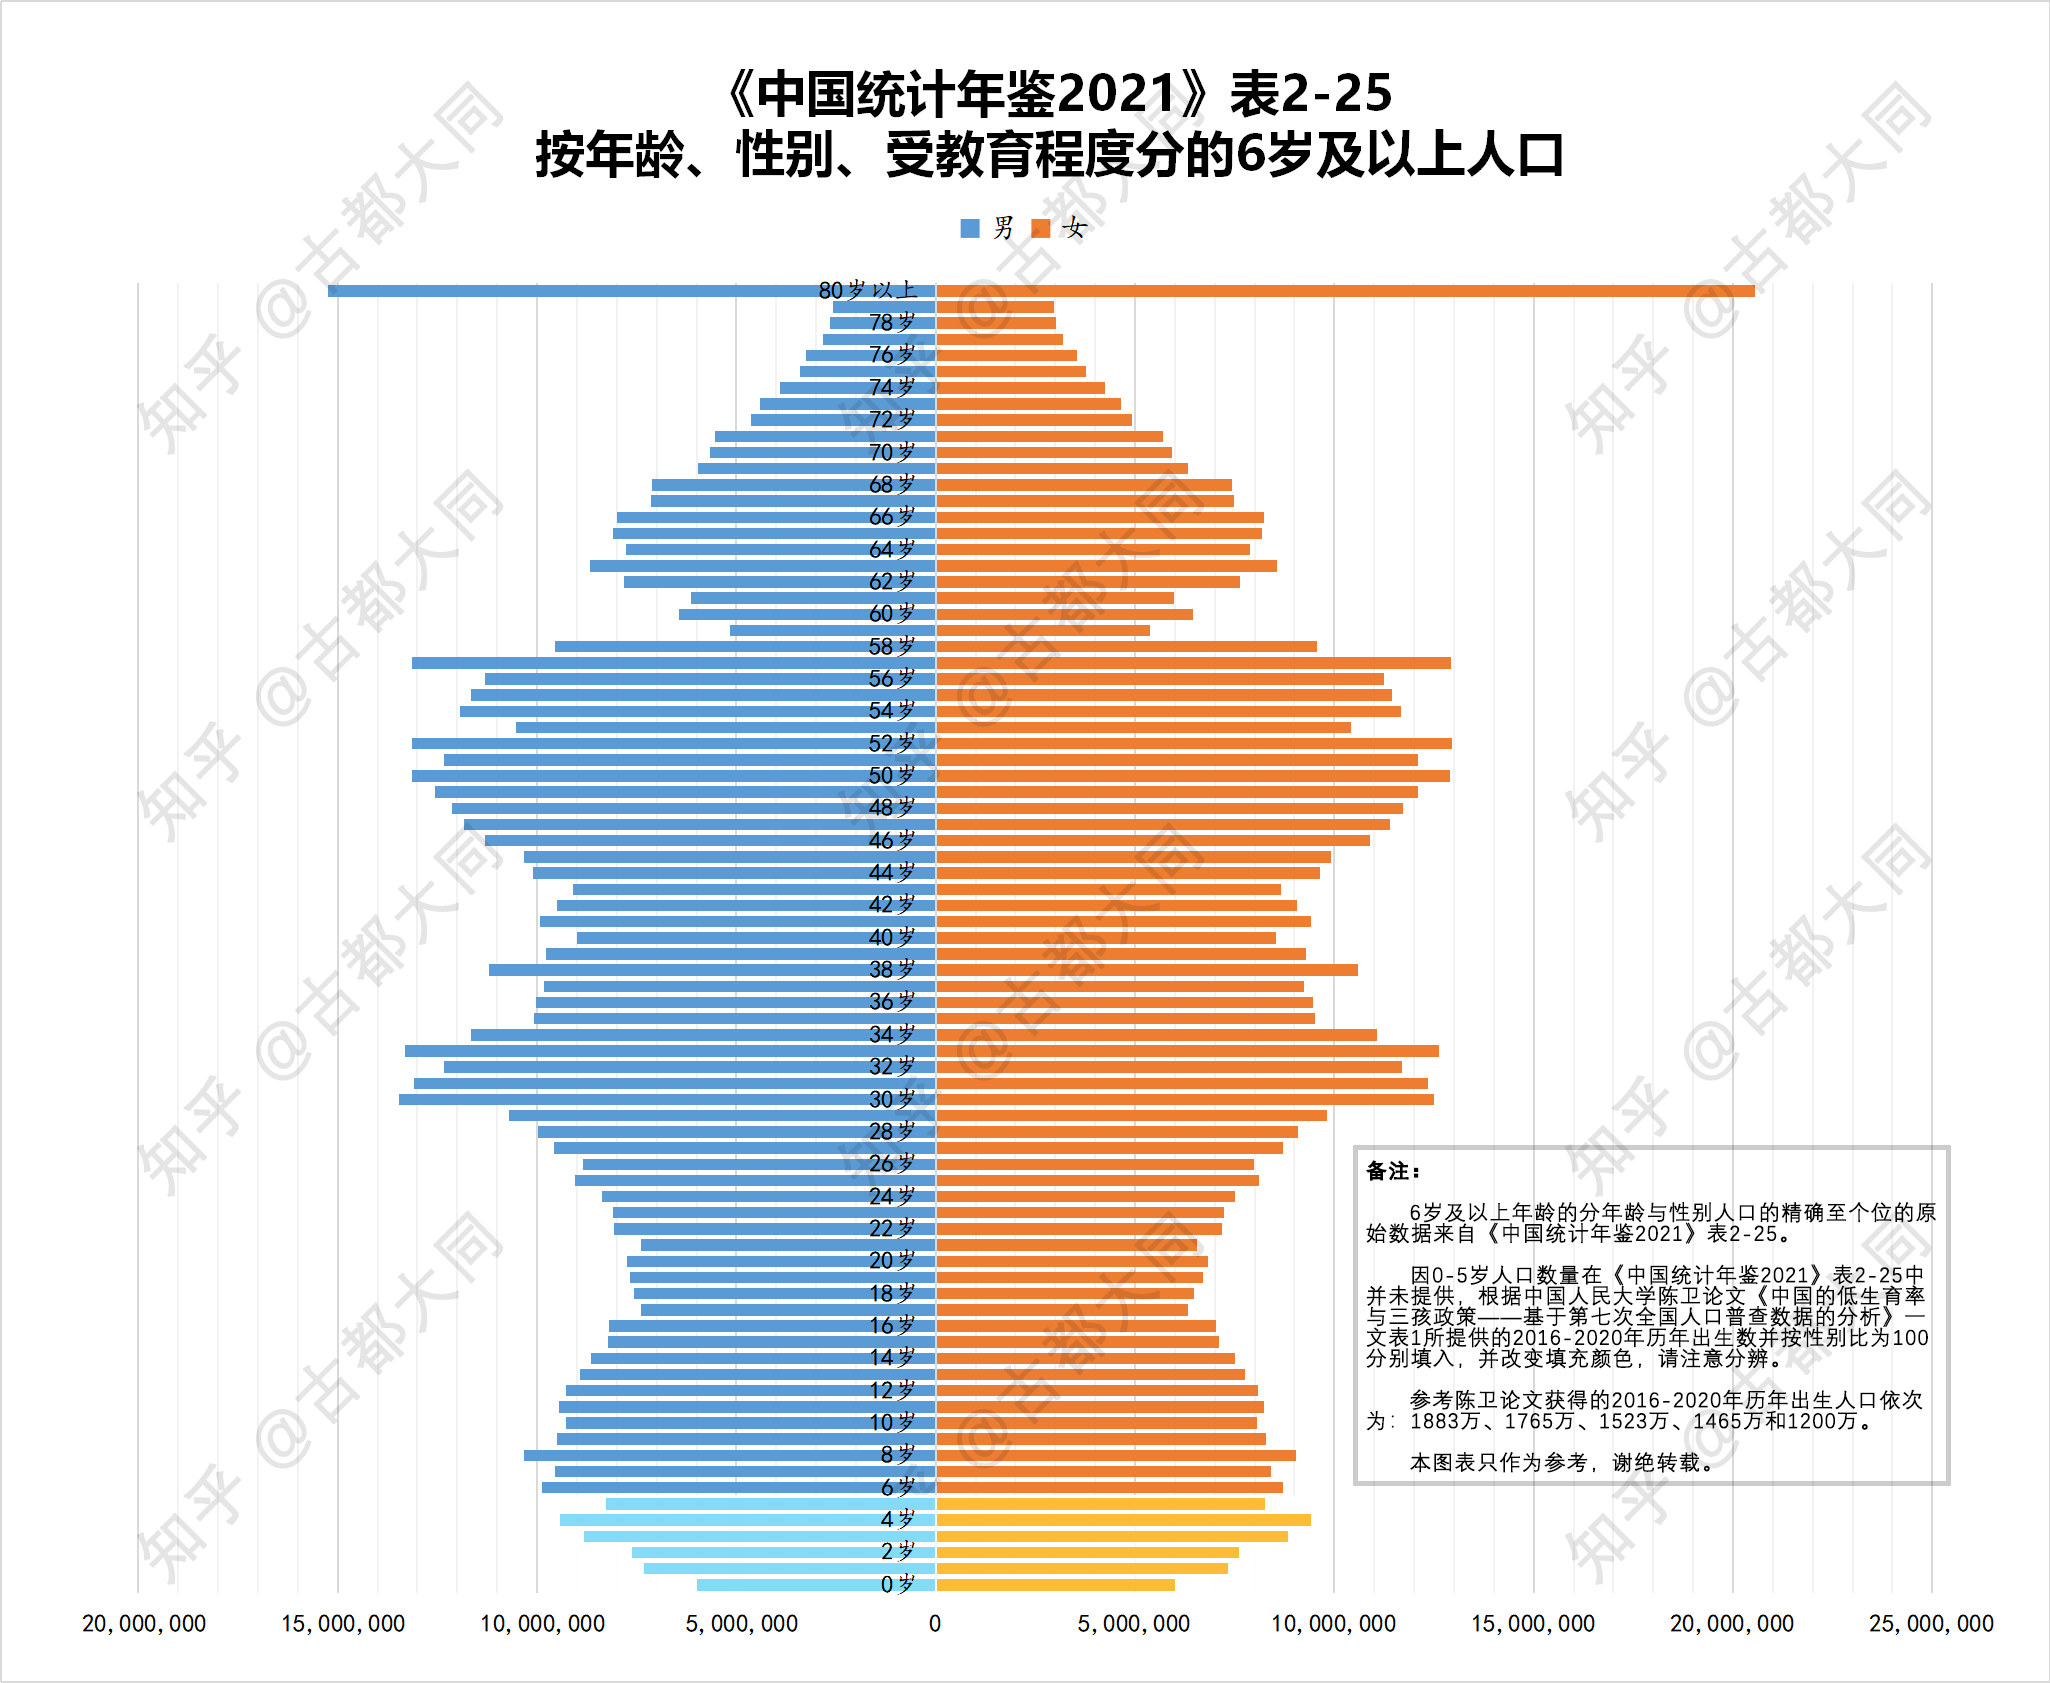 中国人口年龄分布图片